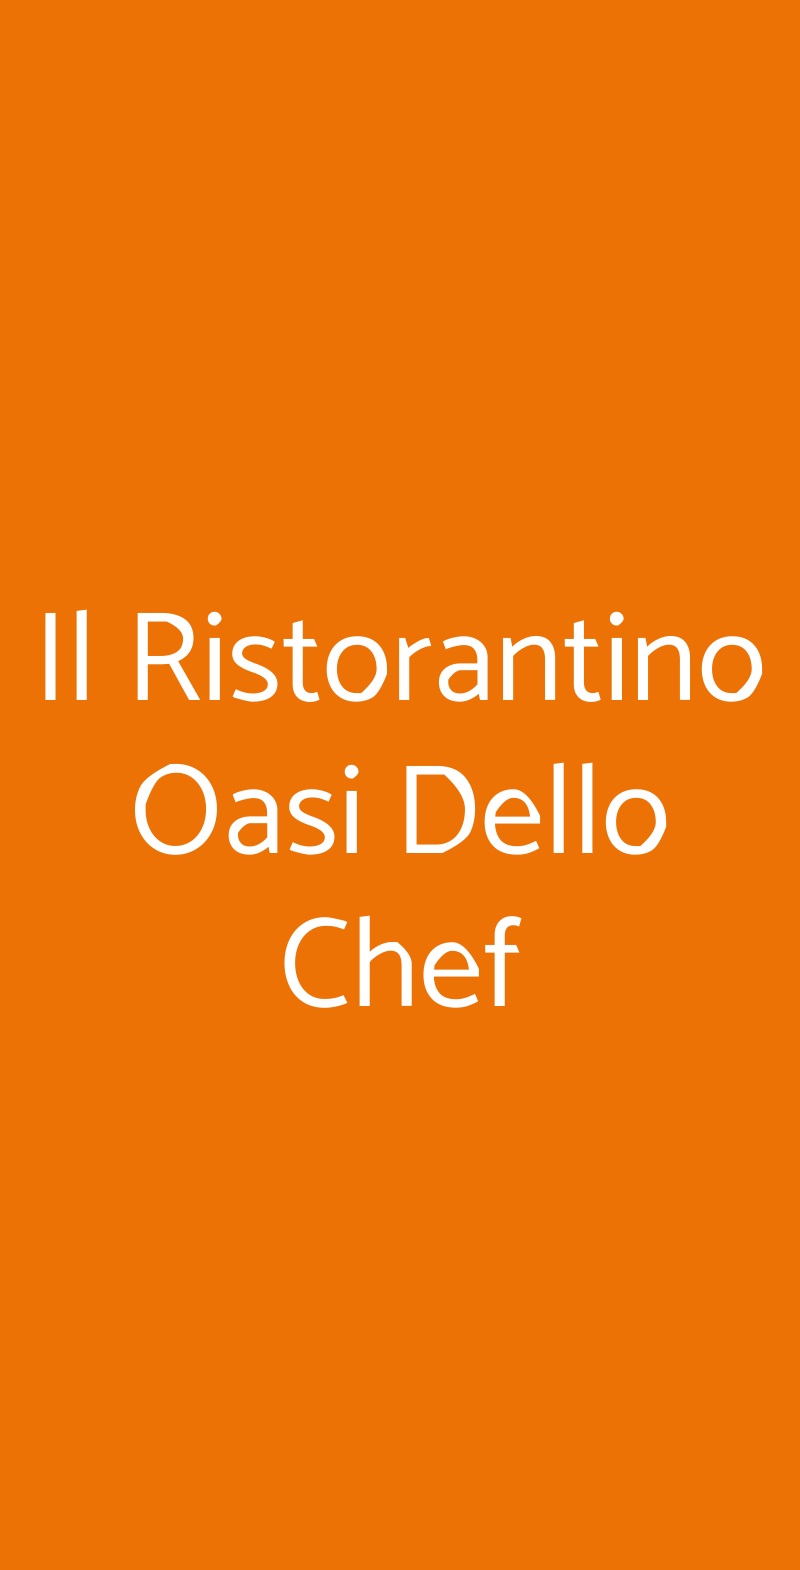 Il Ristorantino Oasi Dello Chef Alpignano menù 1 pagina